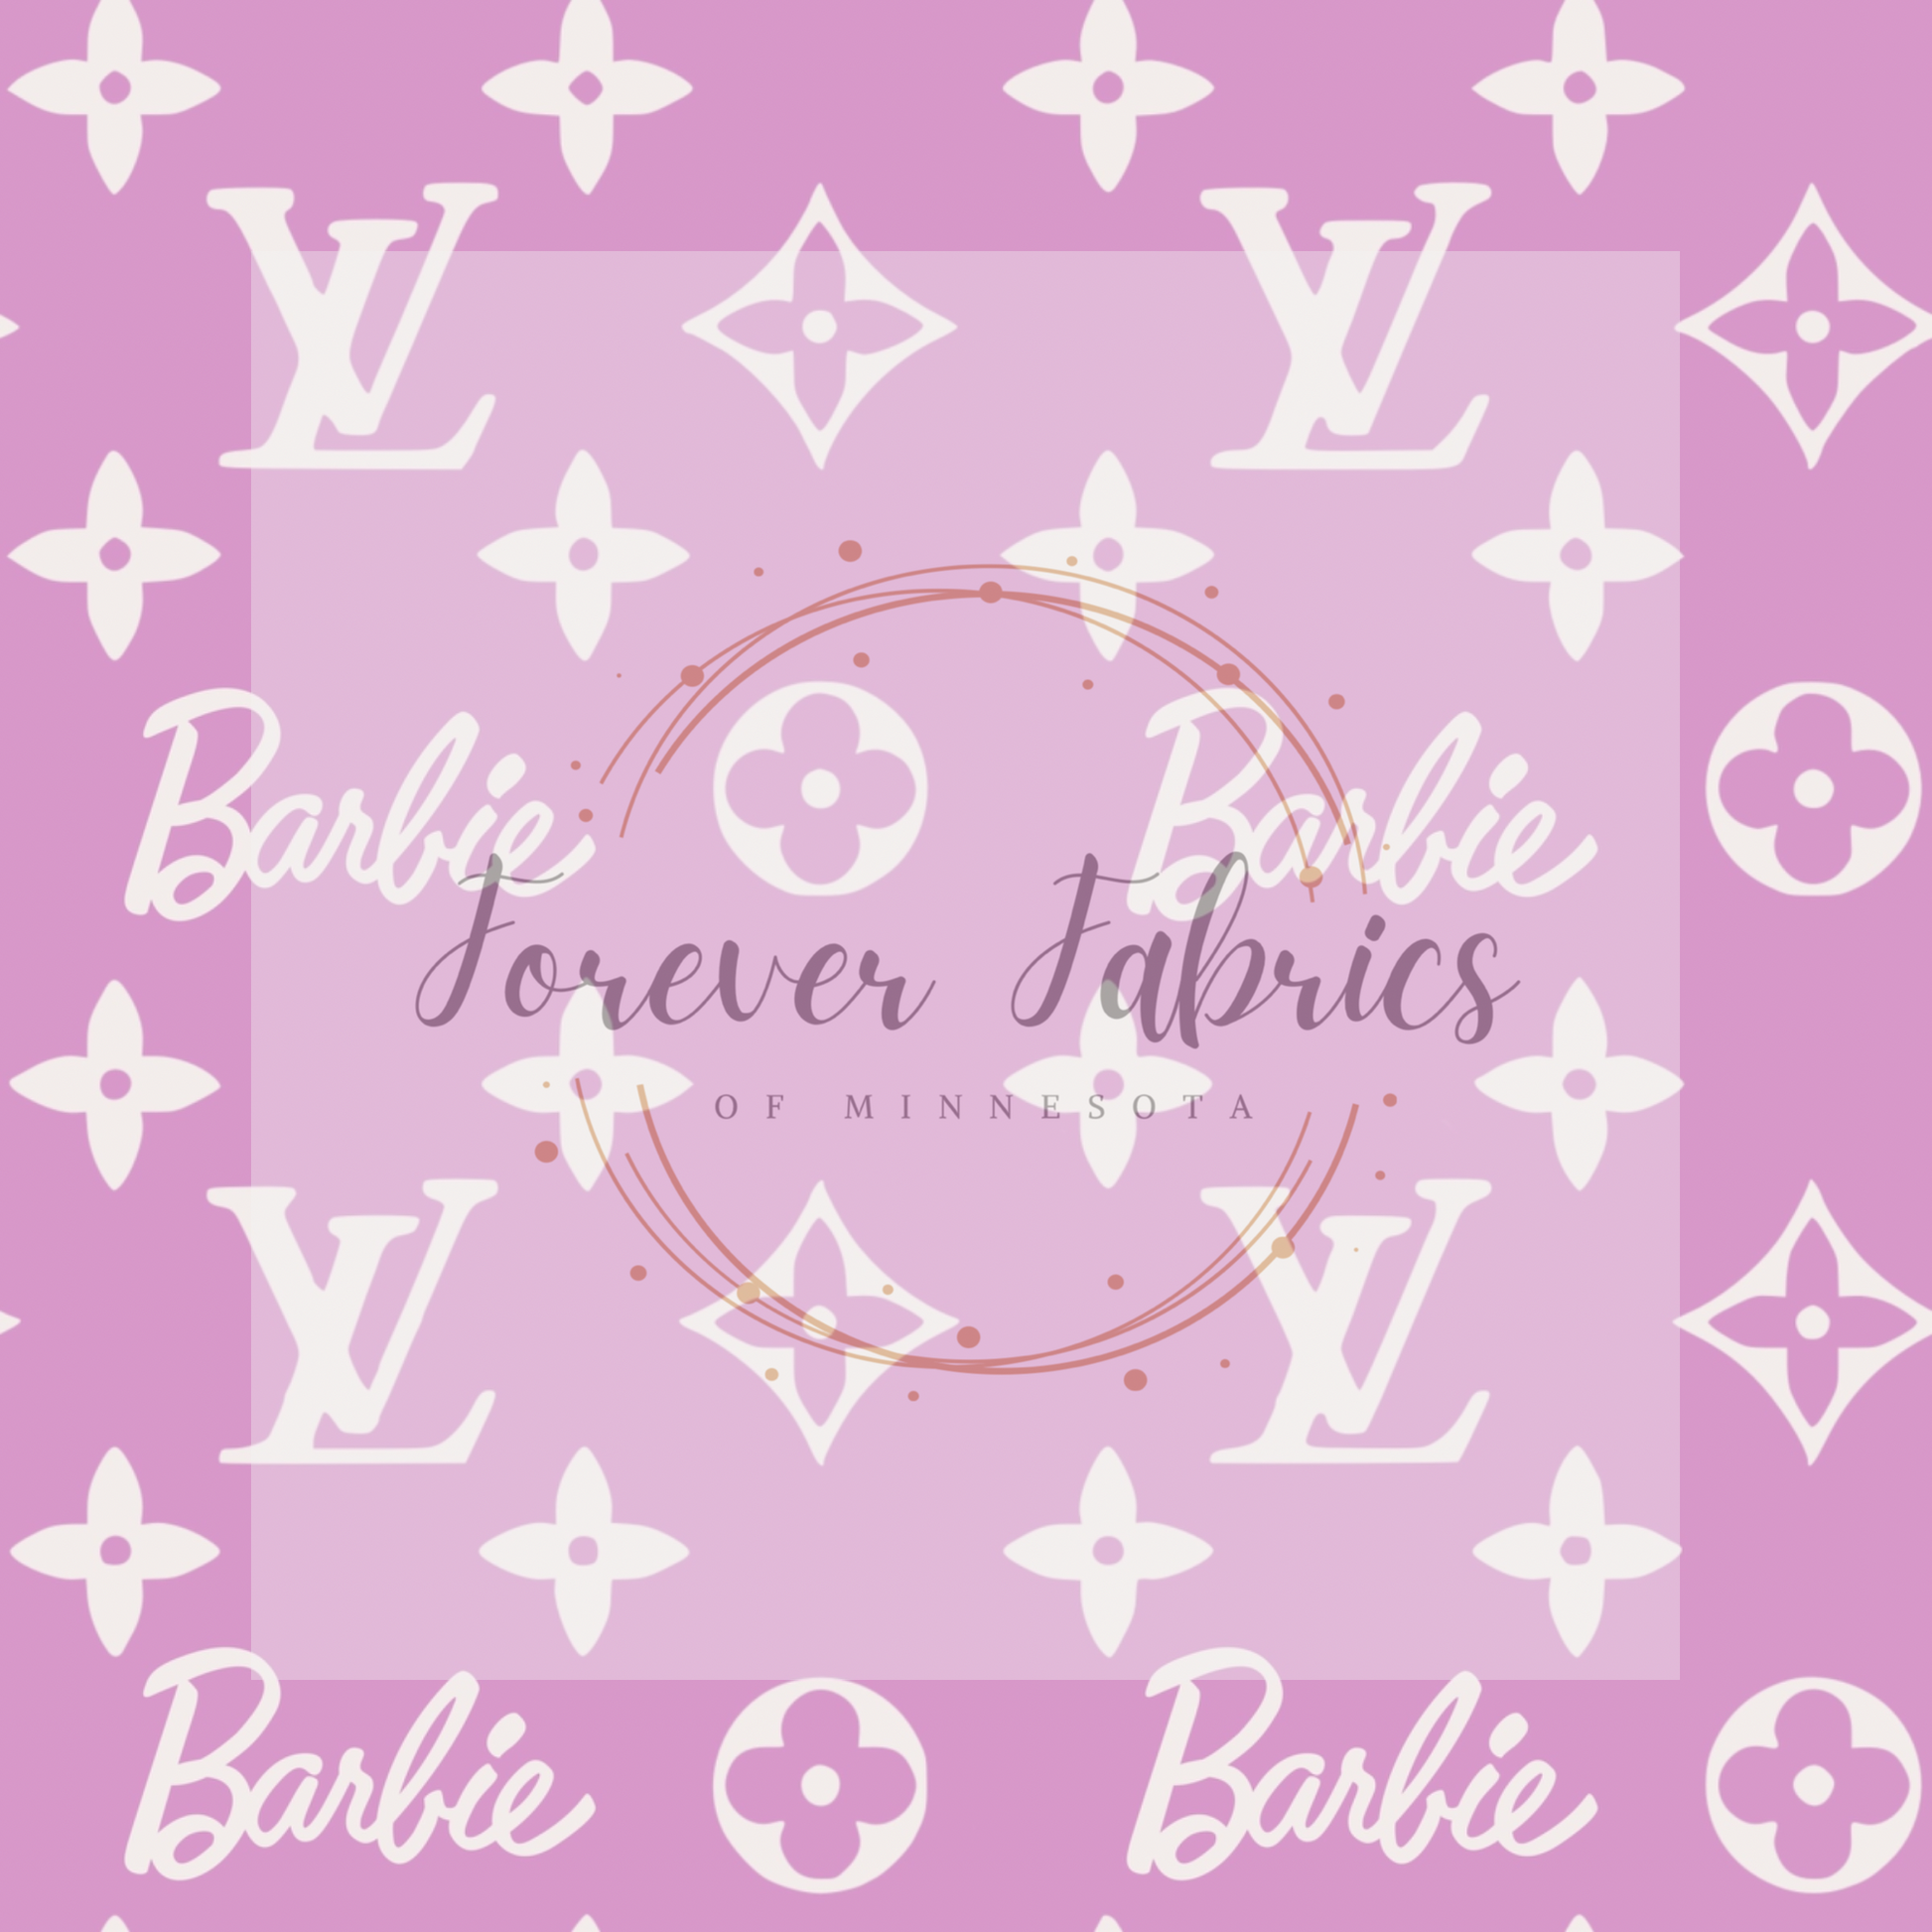 Barbie LV Printed Fabric – Garner Sewing Room